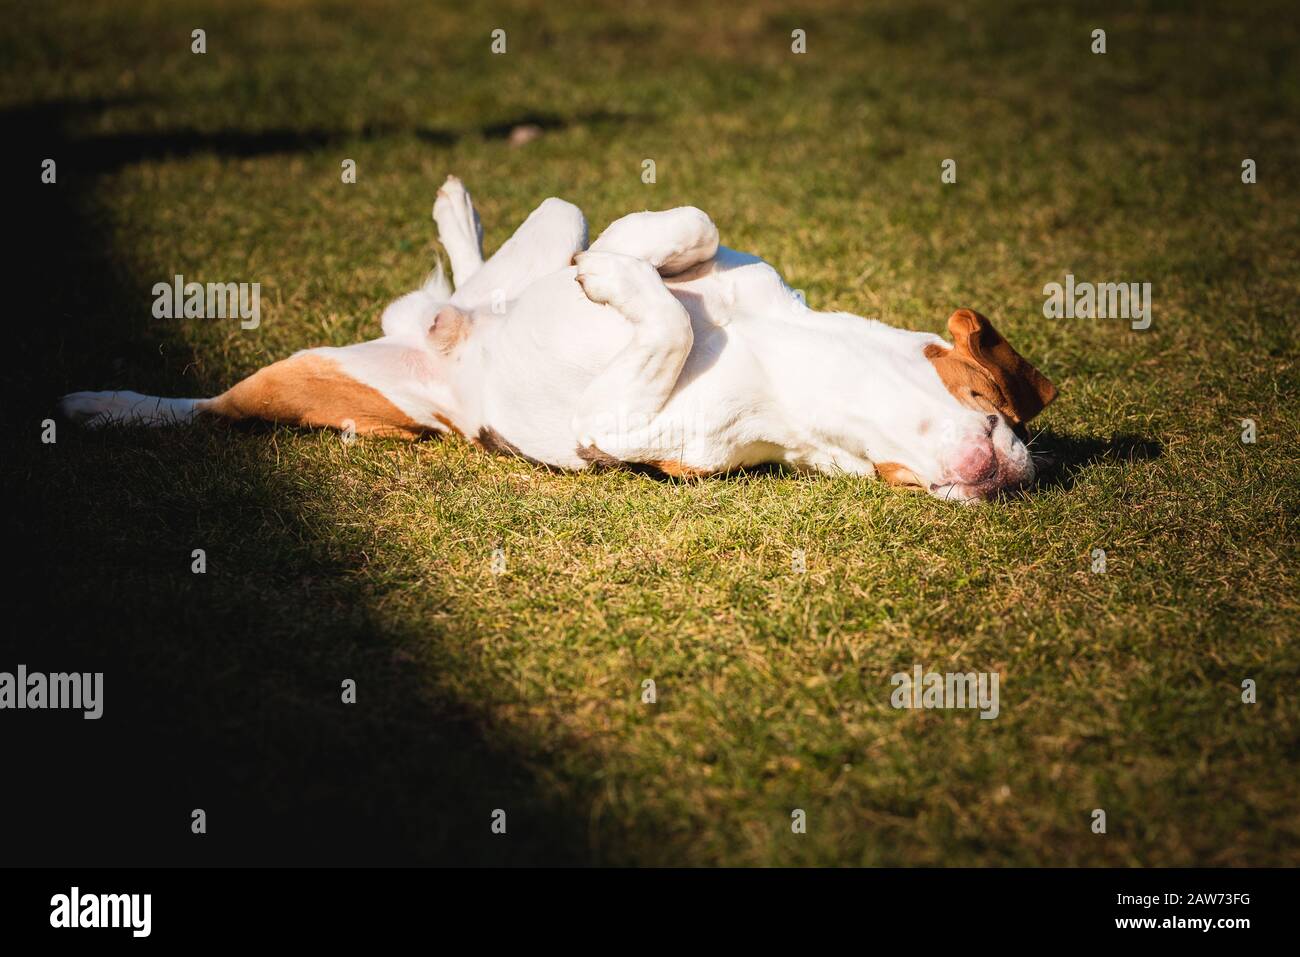 Le beagle se fauche et roule sur l'herbe. Le chien a du temps de relaxation allongé sur l'herbe verte au soleil. Banque D'Images